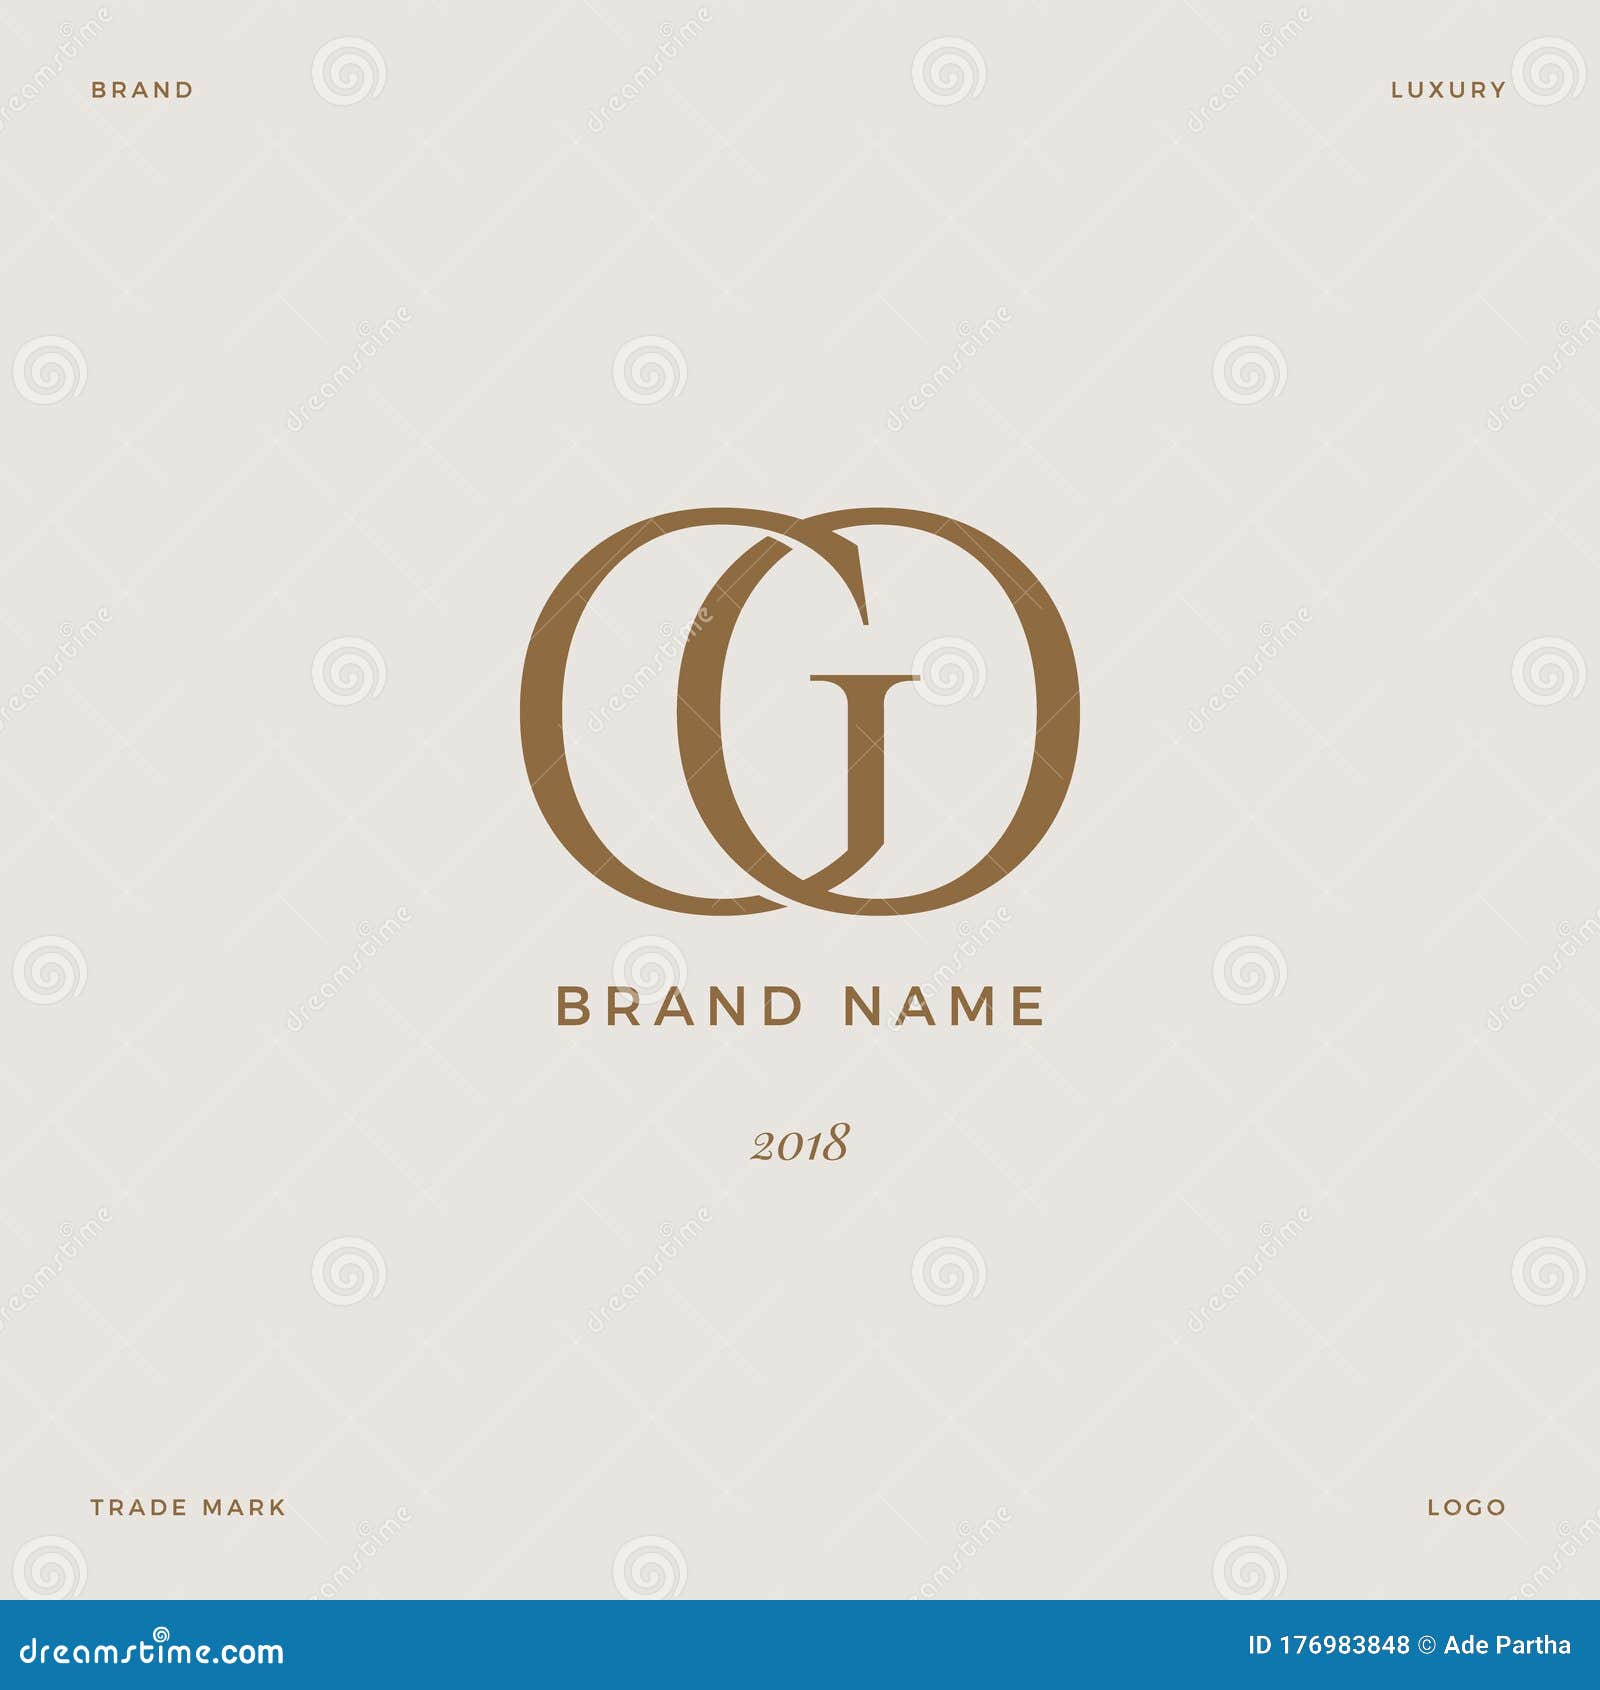 letter go logo luxury gold